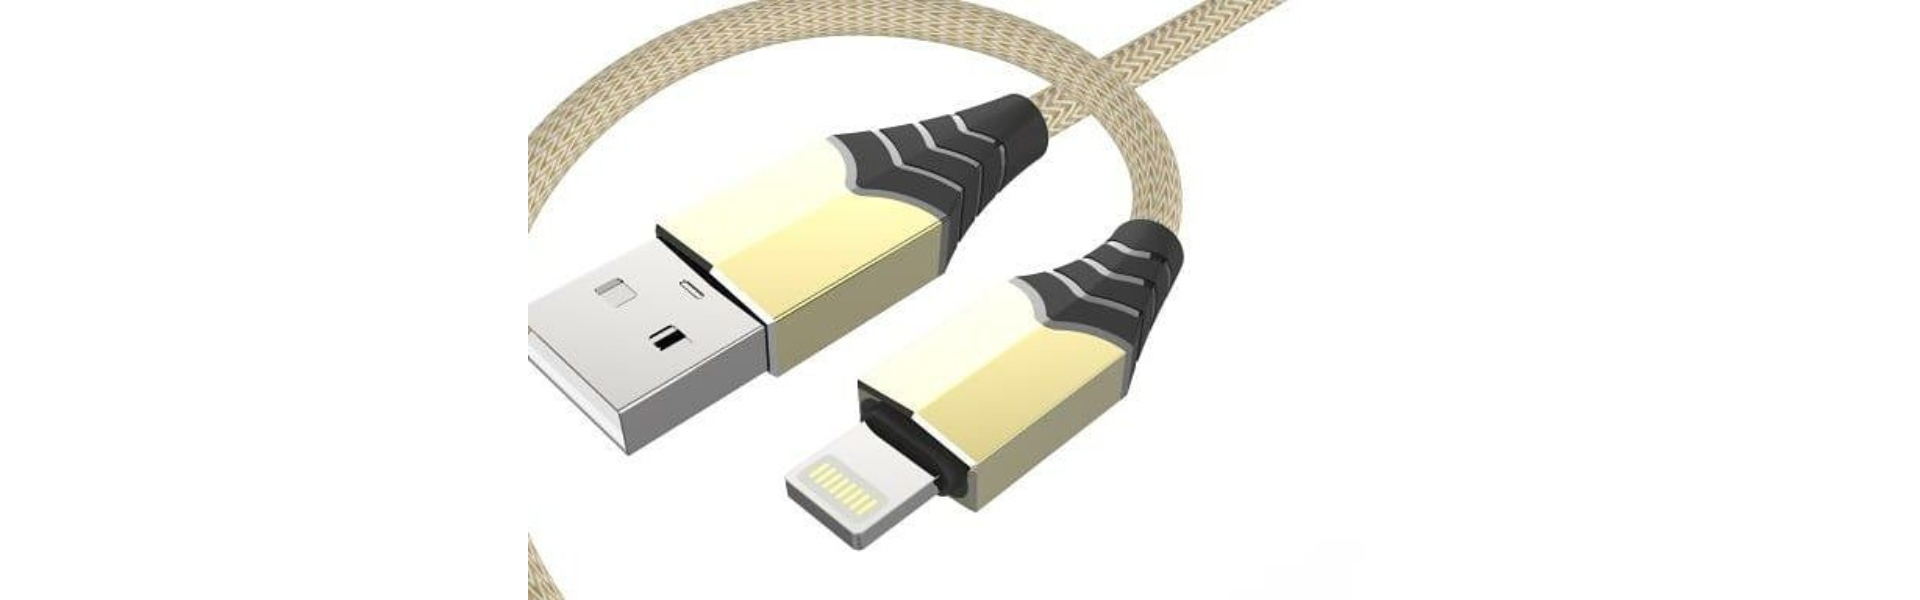 Ligne USB, ligne USB, ligne de données USB,Dong Guan Rong Pin Electronic Technology Co.Ltd